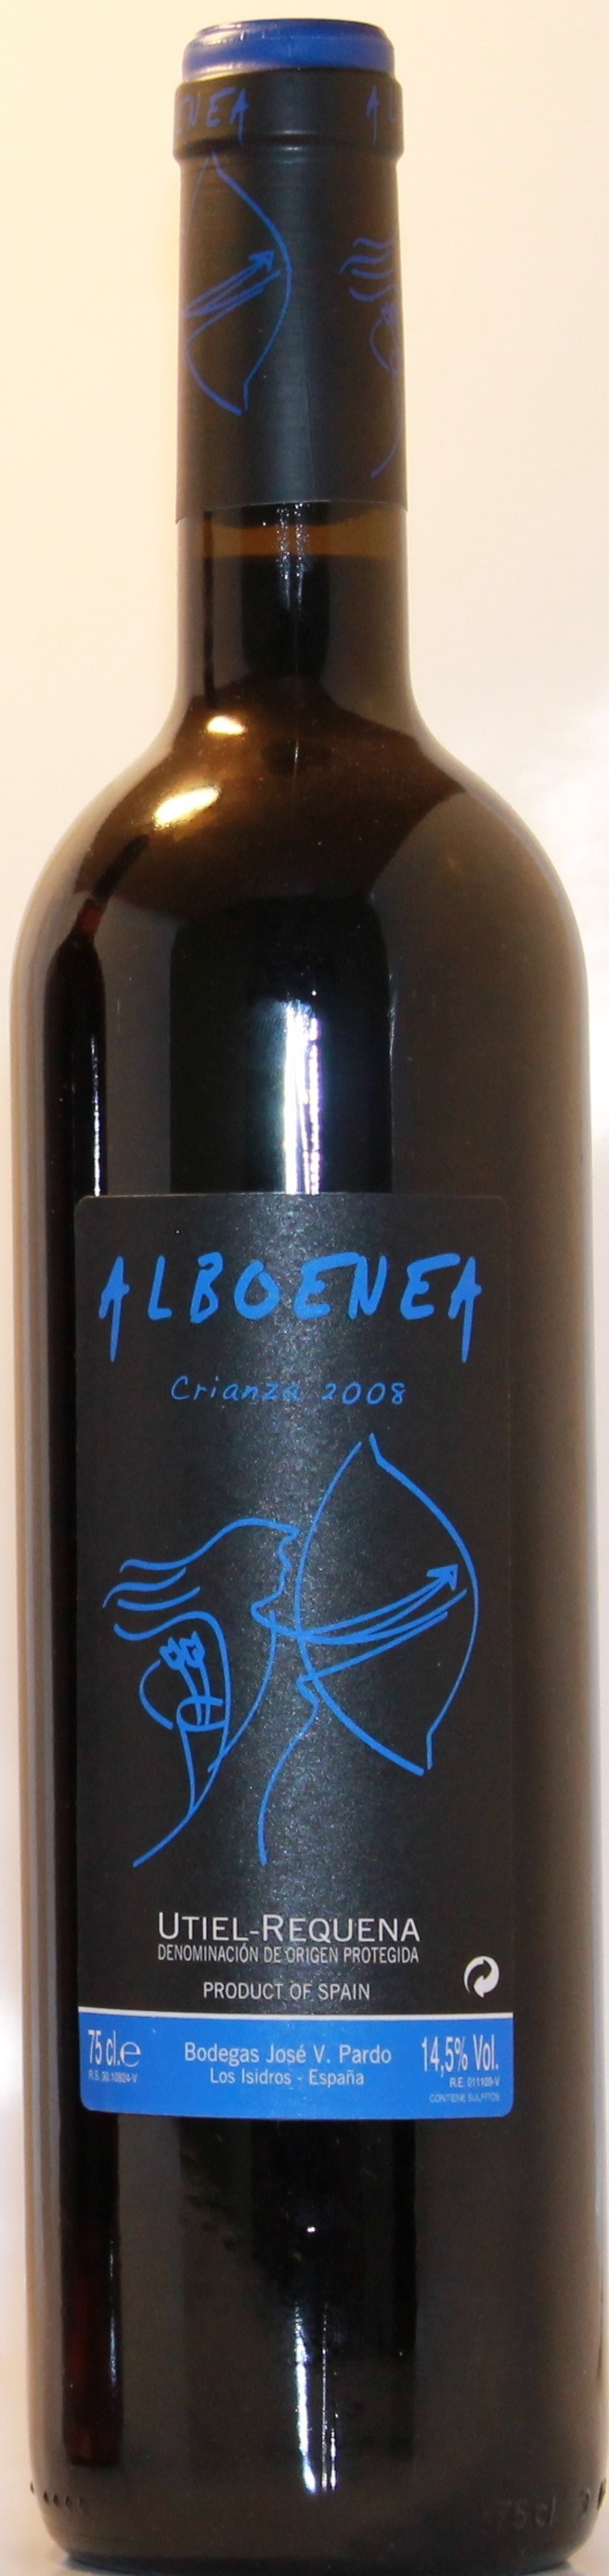 Logo del vino Alboenea